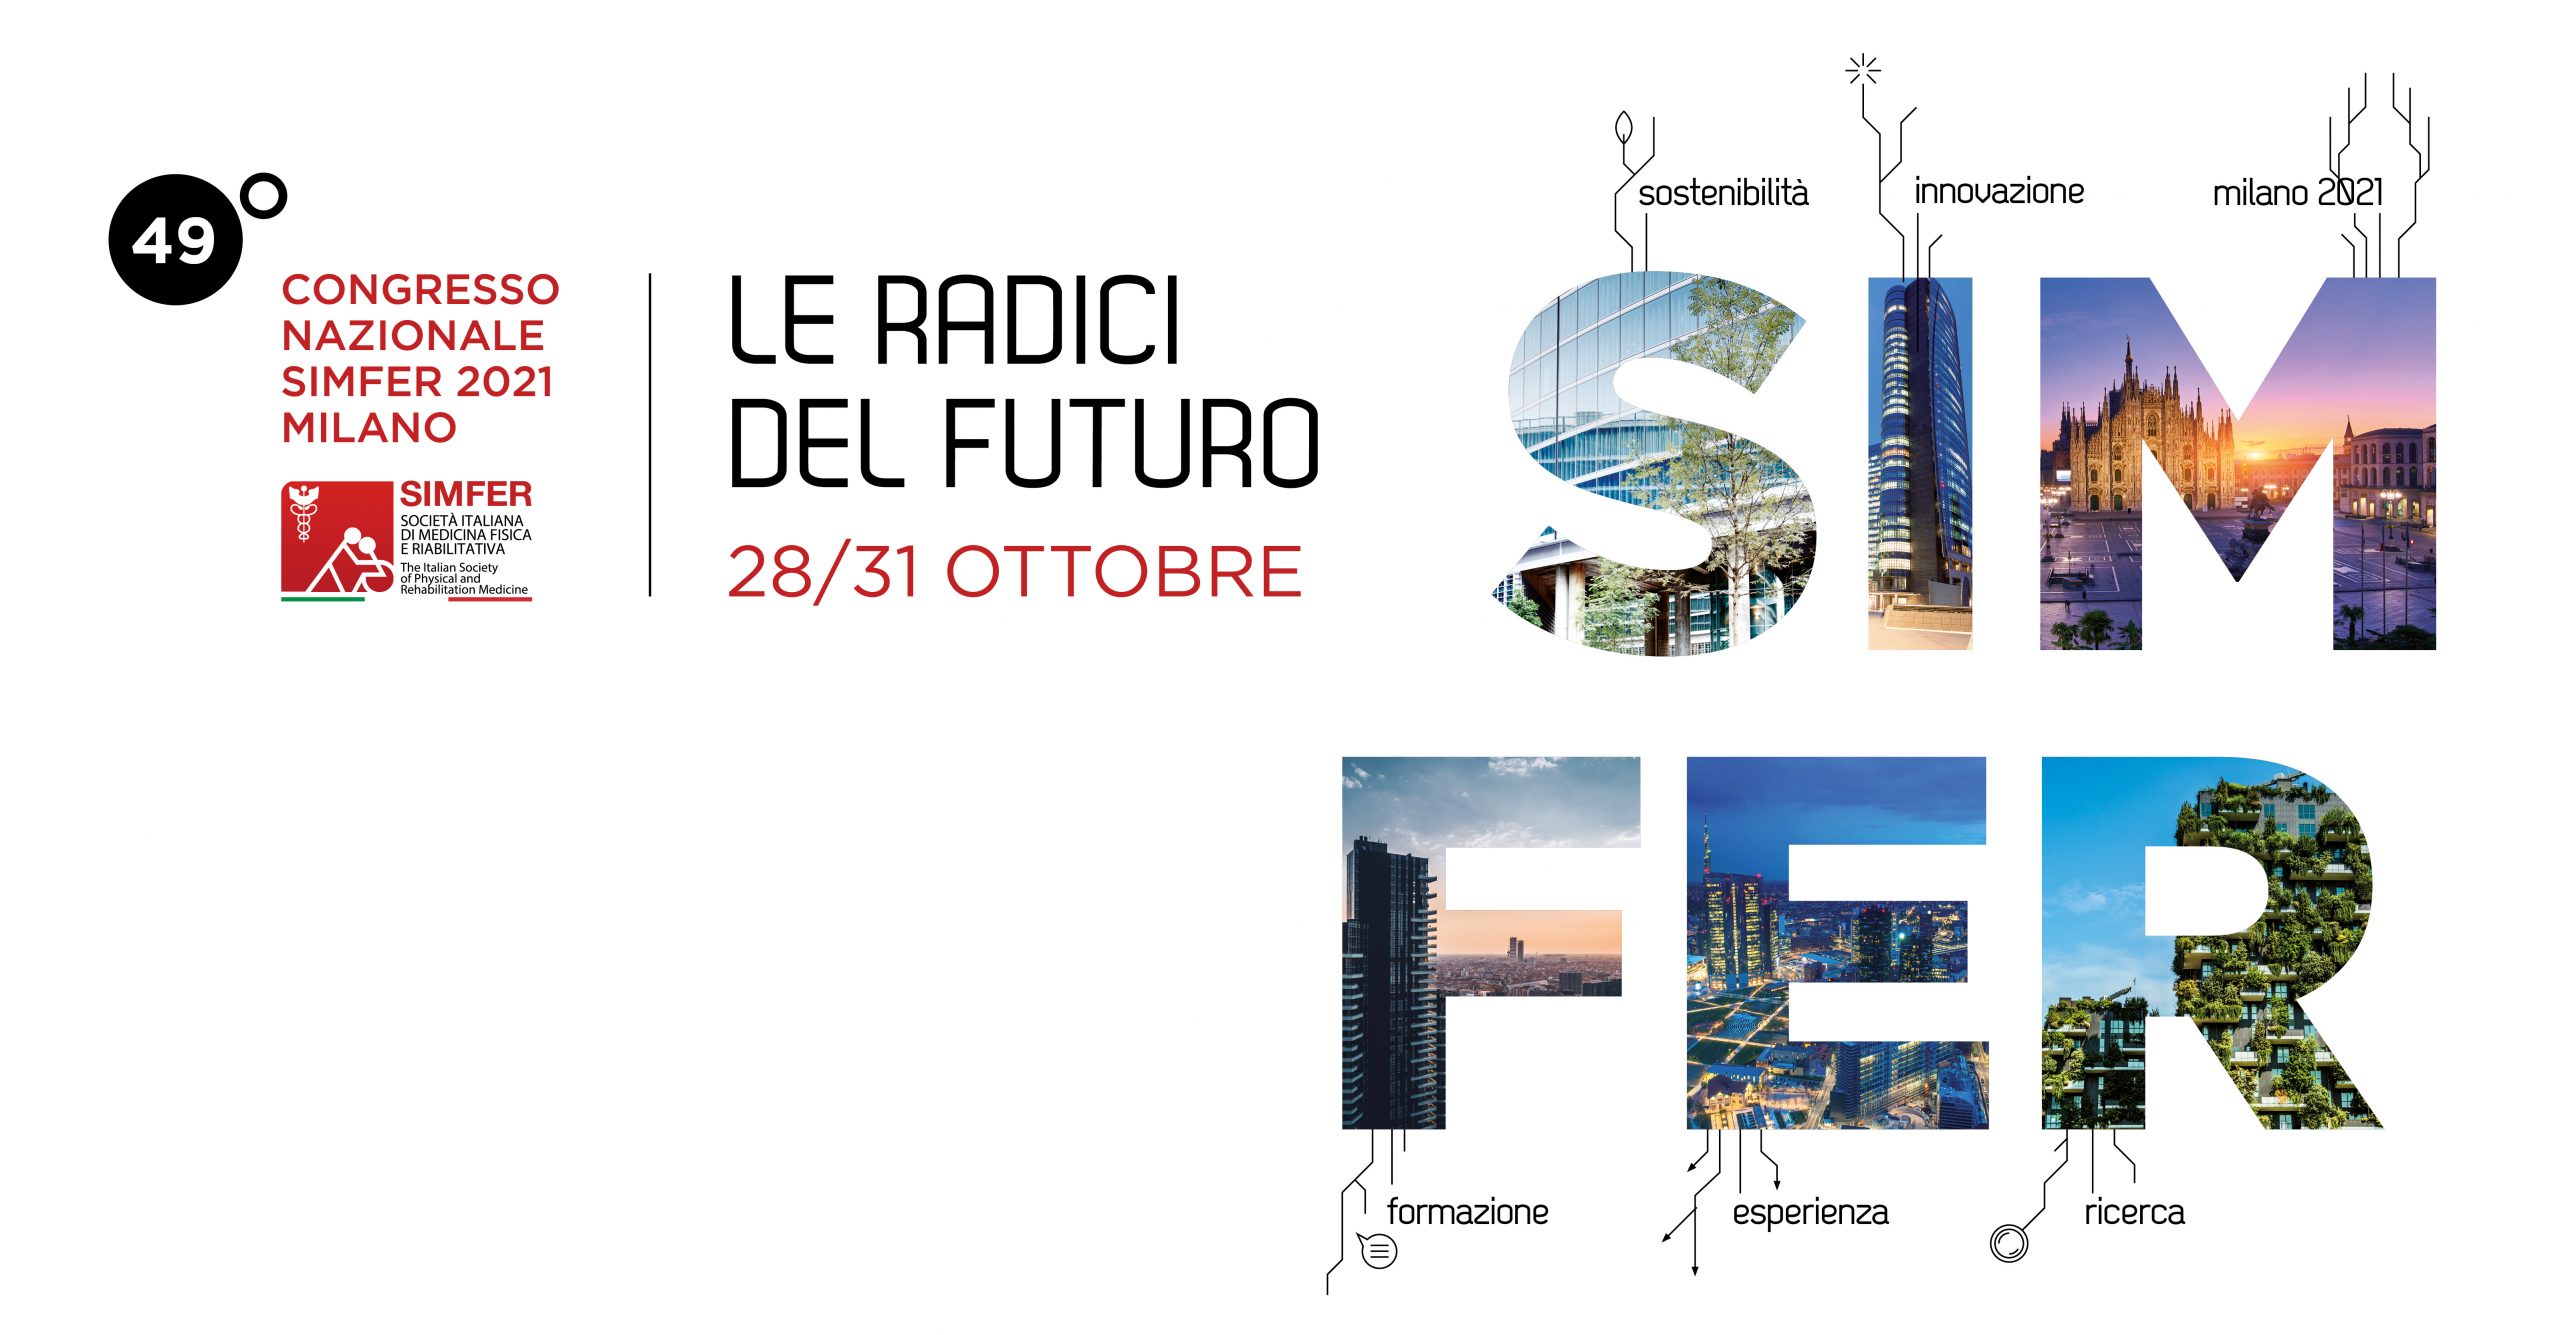 49° Congresso SIMFER 2021 a Milano dal 29 al 31 ottobre: “Le radici del futuro”